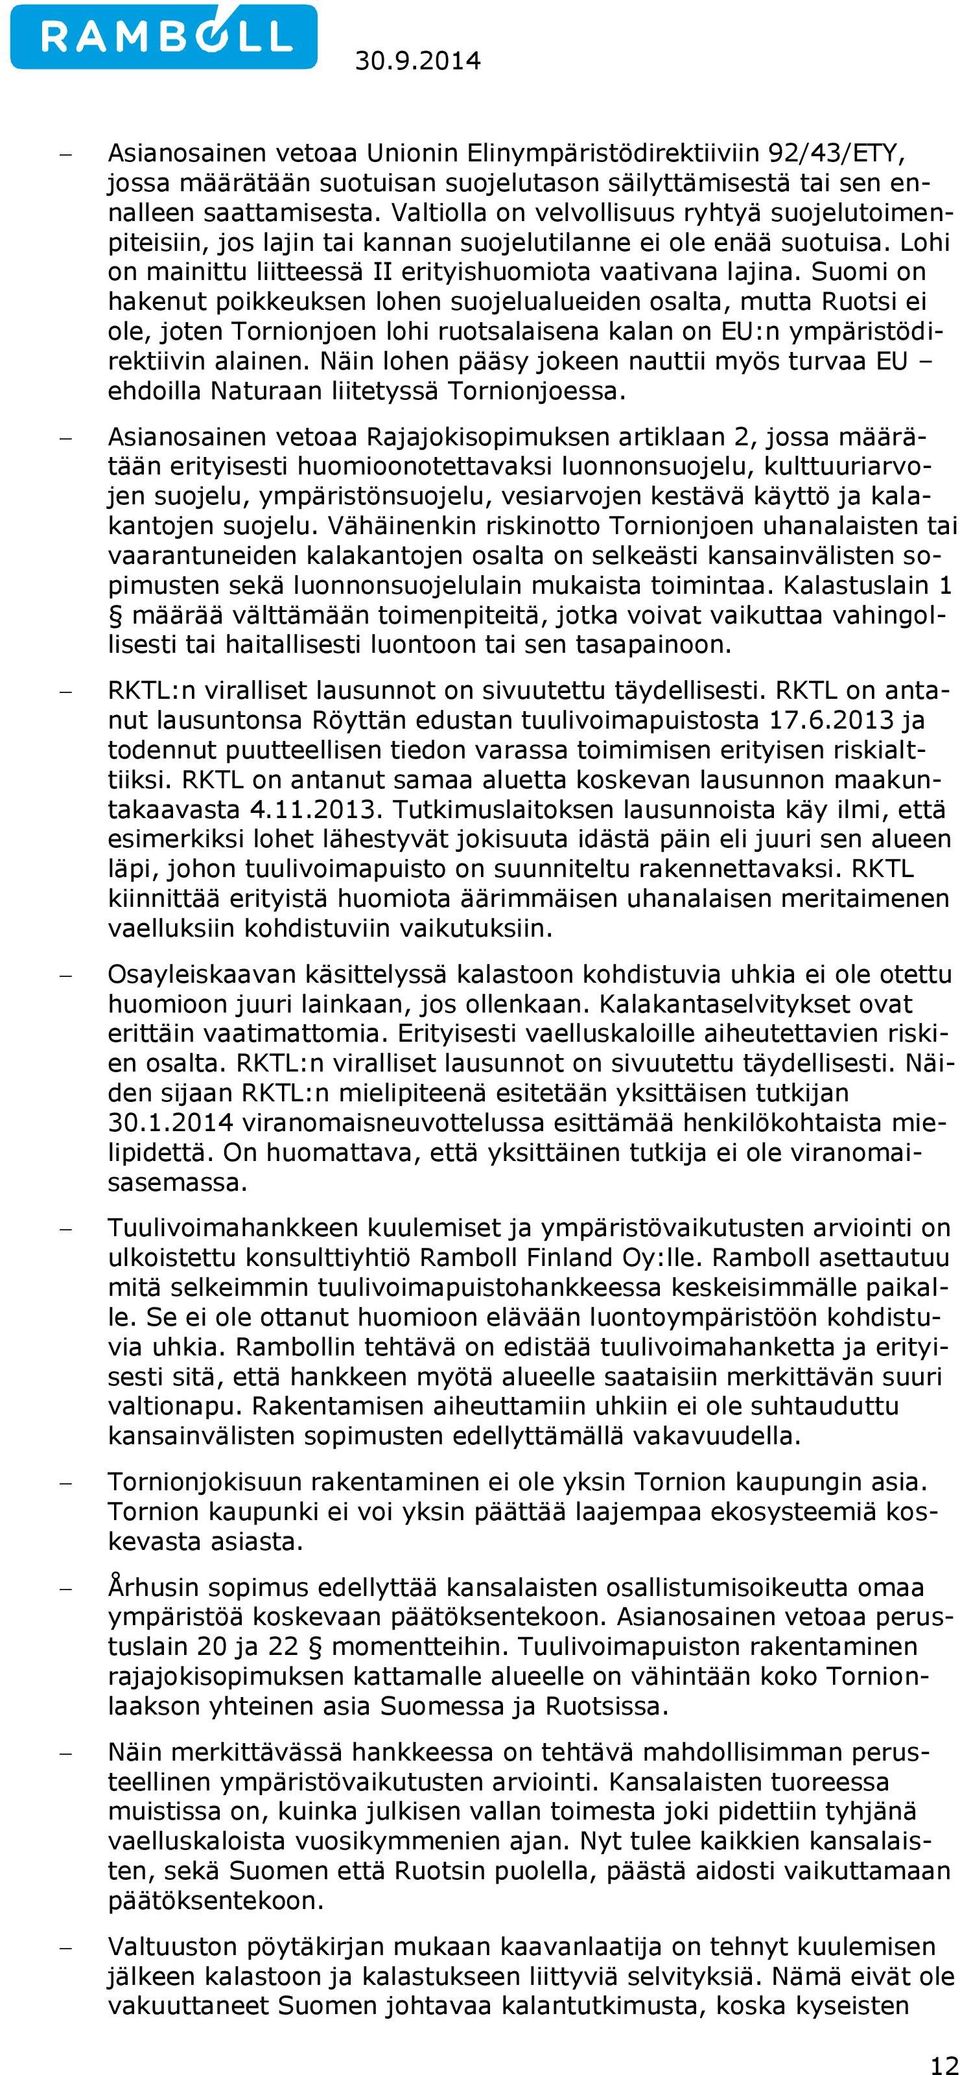 Suomi on hakenut poikkeuksen lohen suojelualueiden osalta, mutta Ruotsi ei ole, joten Tornionjoen lohi ruotsalaisena kalan on EU:n ympäristödirektiivin alainen.